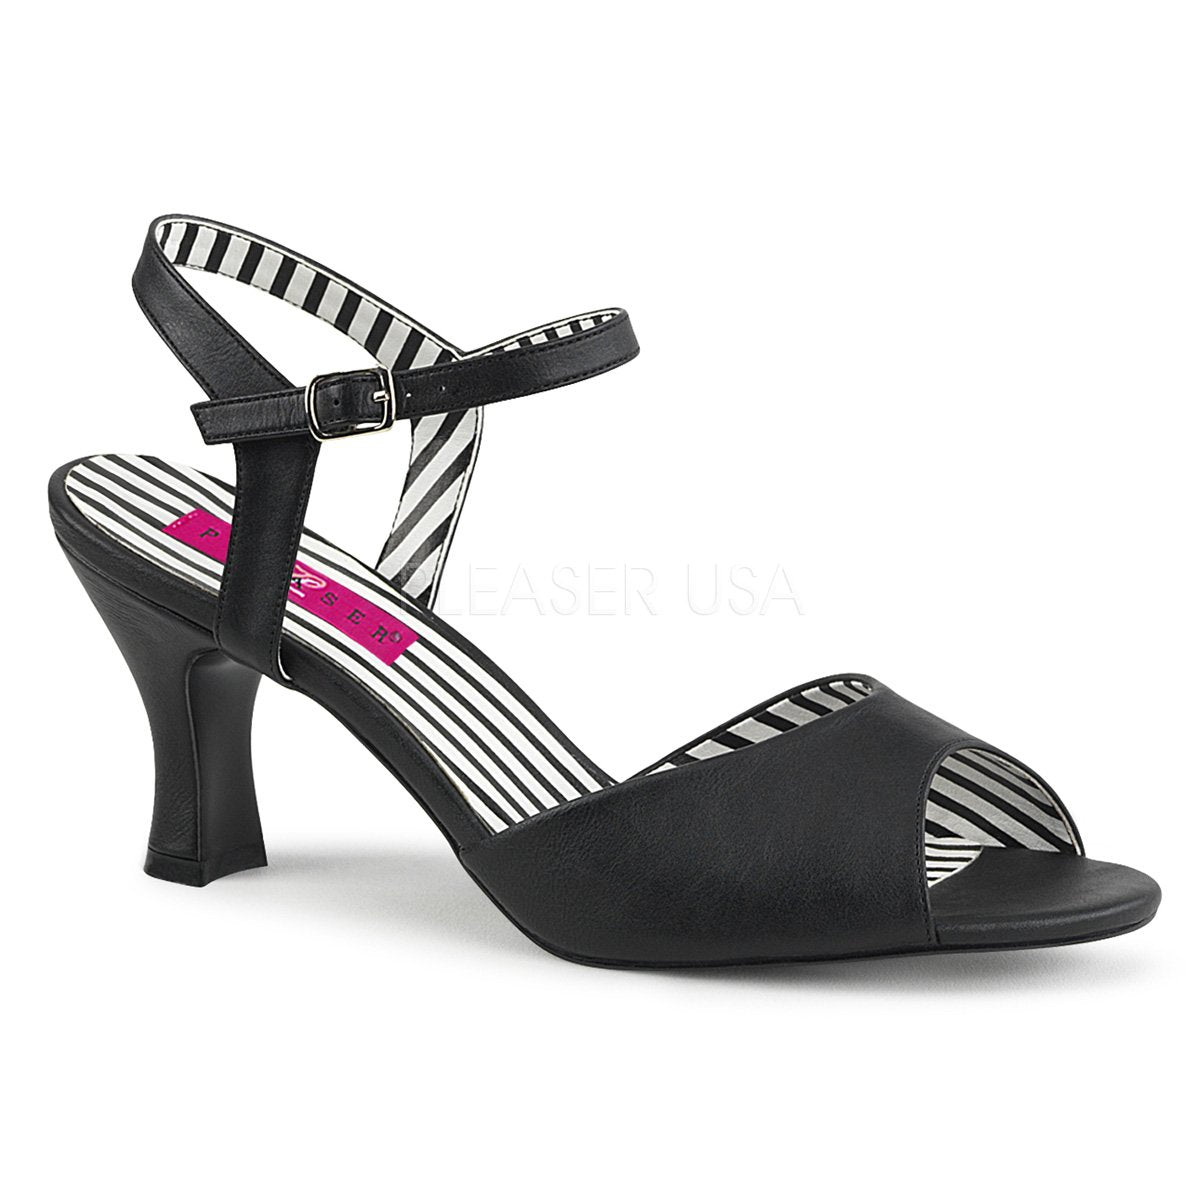 Buy Block Heels Sandals For Women 3 Inches online | Lazada.com.ph